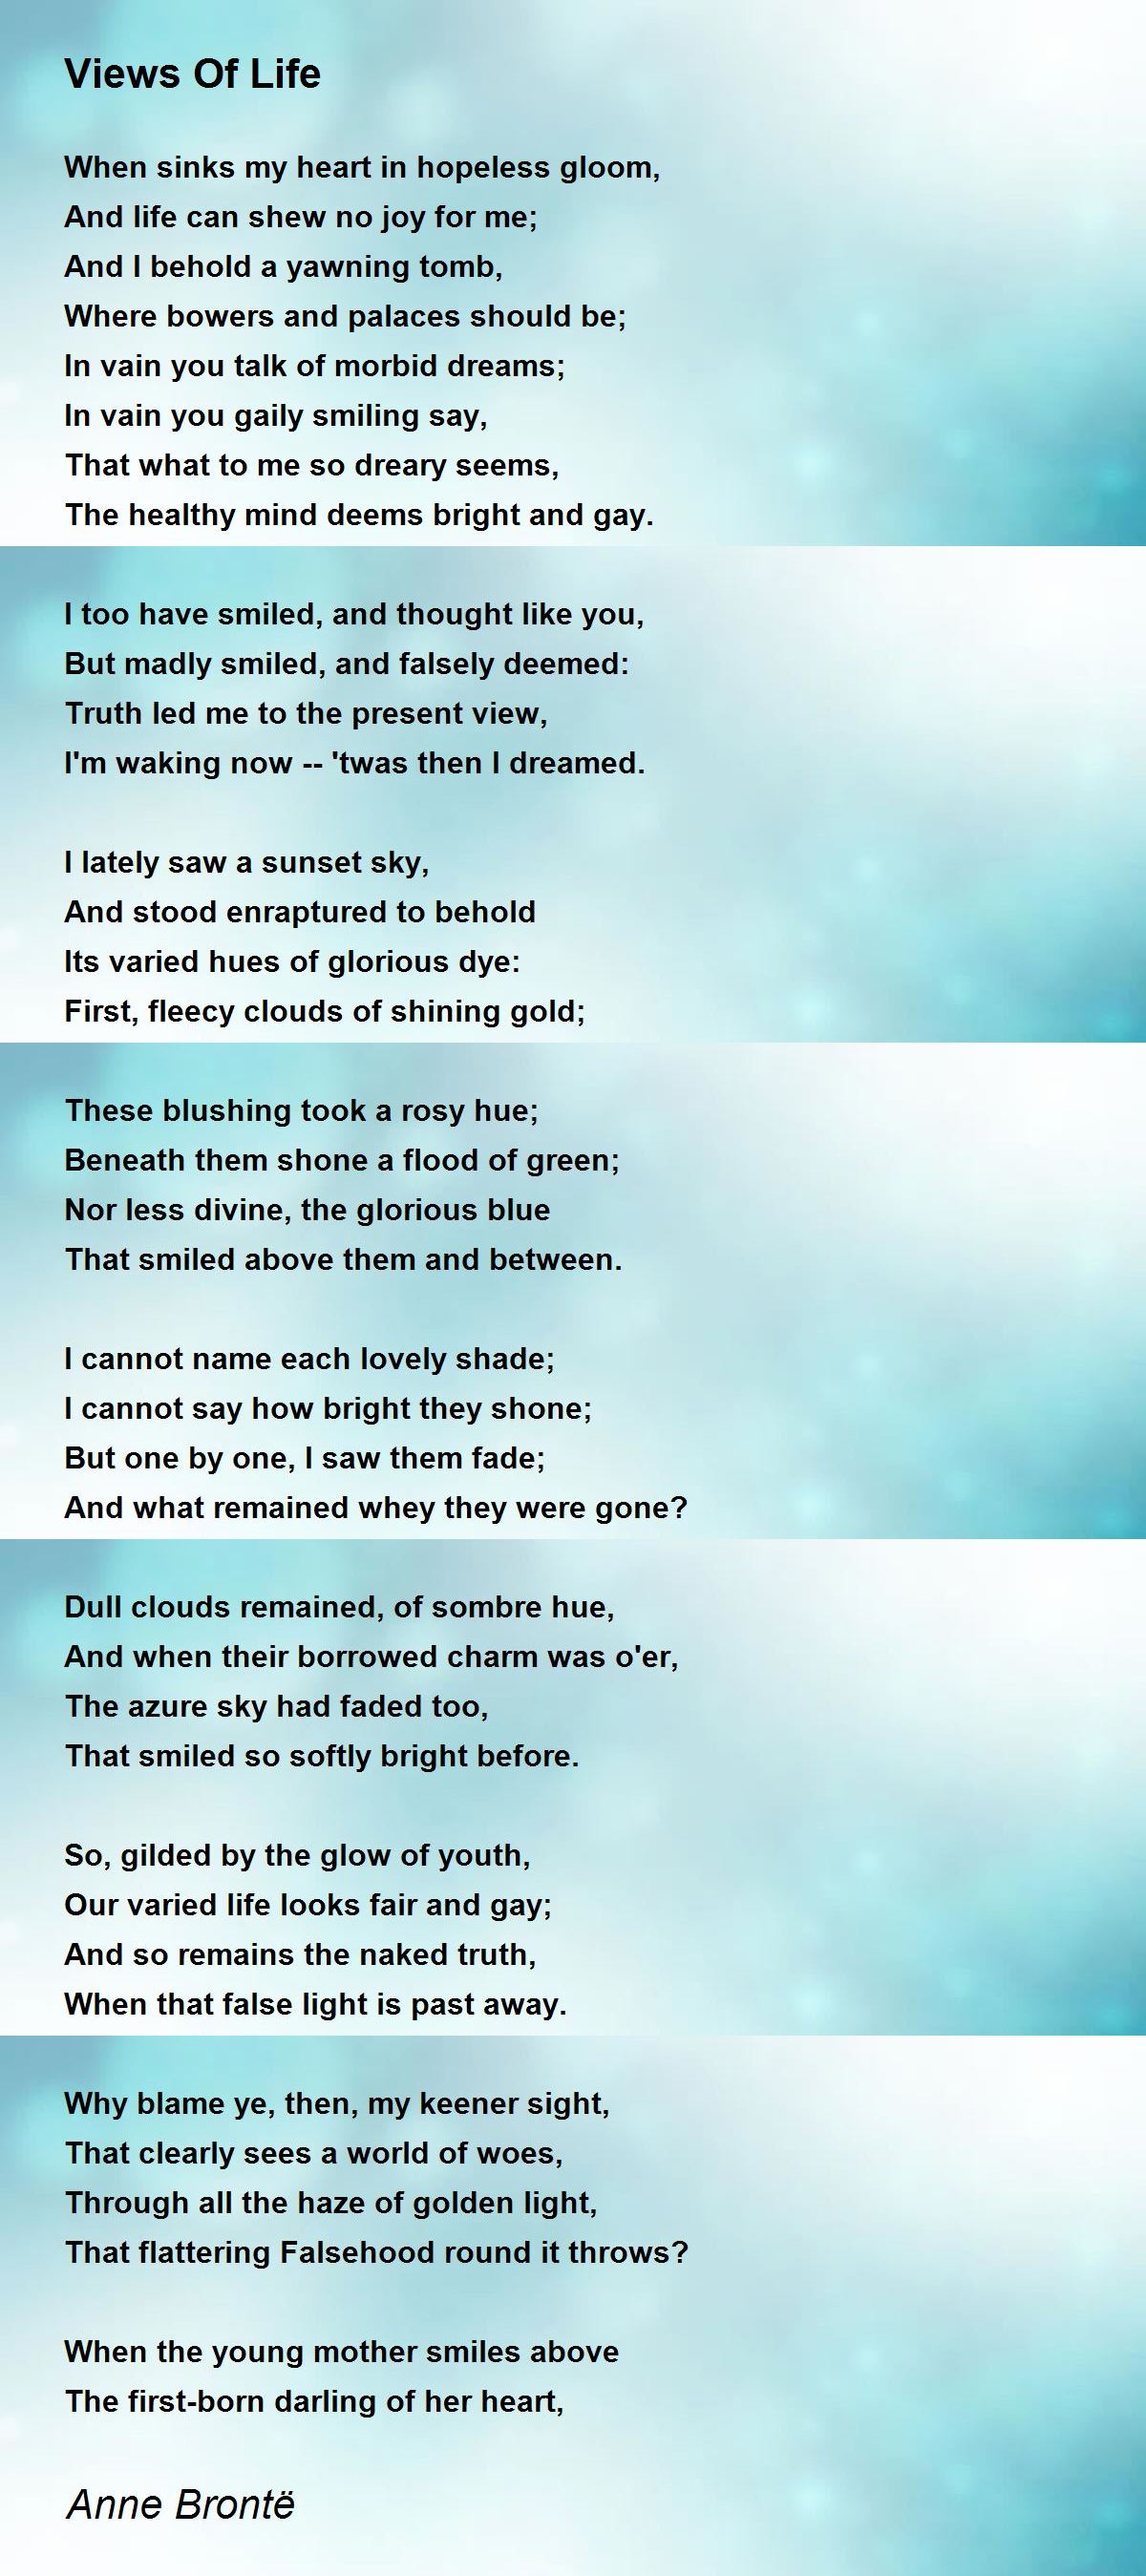 Views Of Life Poem by Anne Brontë - Poem Hunter